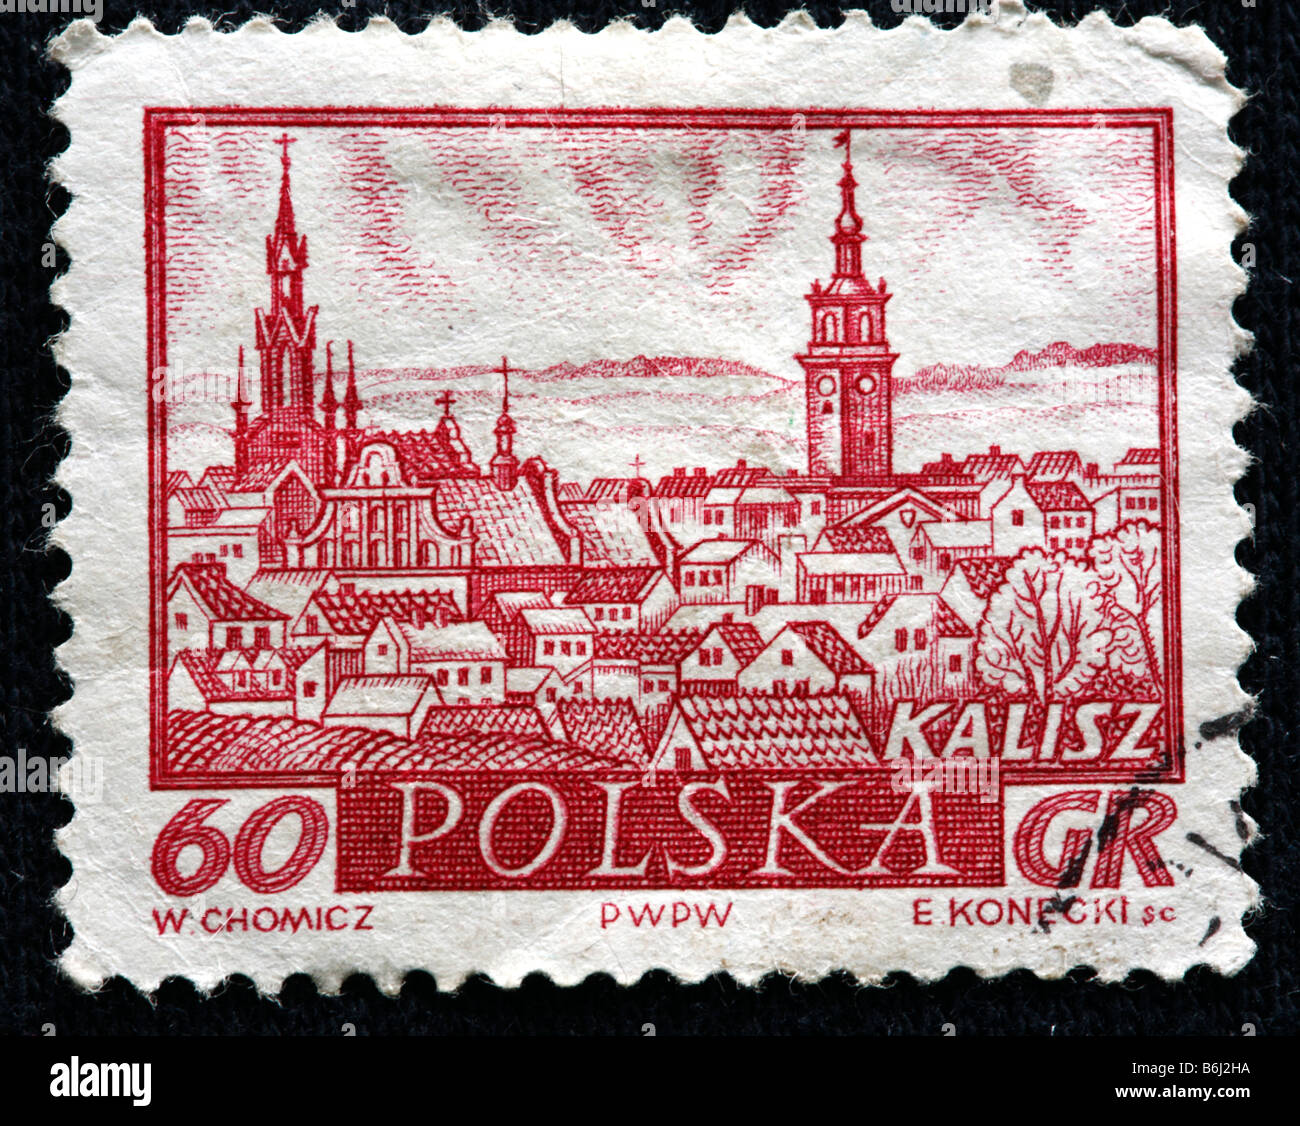 Kalisz, timbre-poste, Pologne Banque D'Images